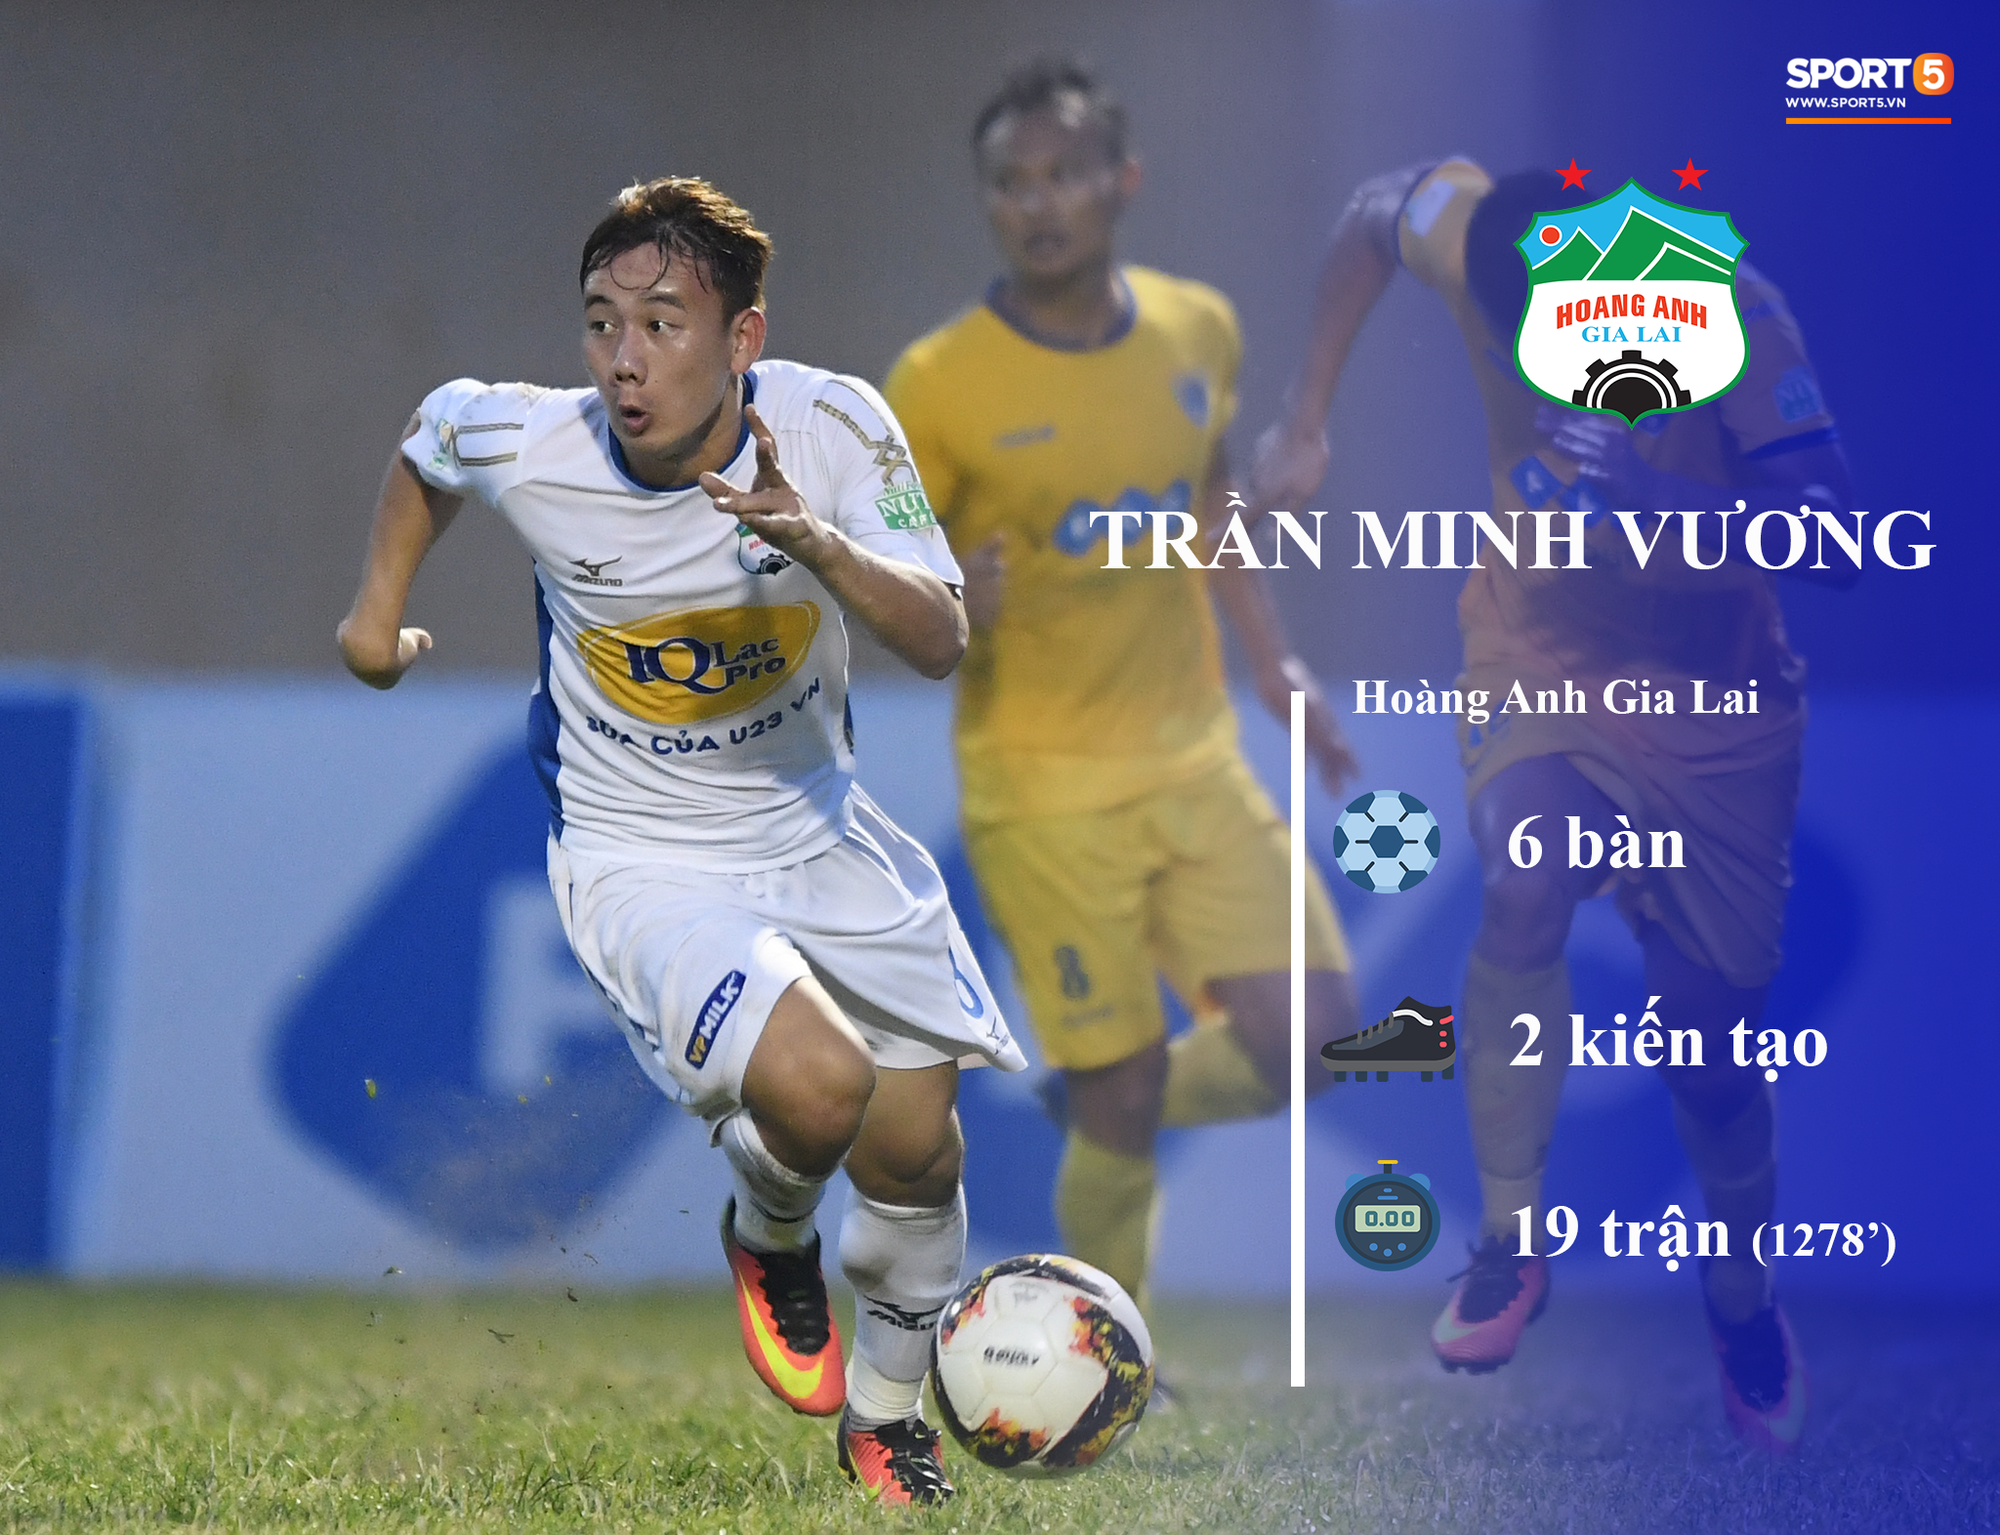 Những thống kê đáng chú ý của cầu thủ U23 Việt Nam (P1) - Ảnh 4.